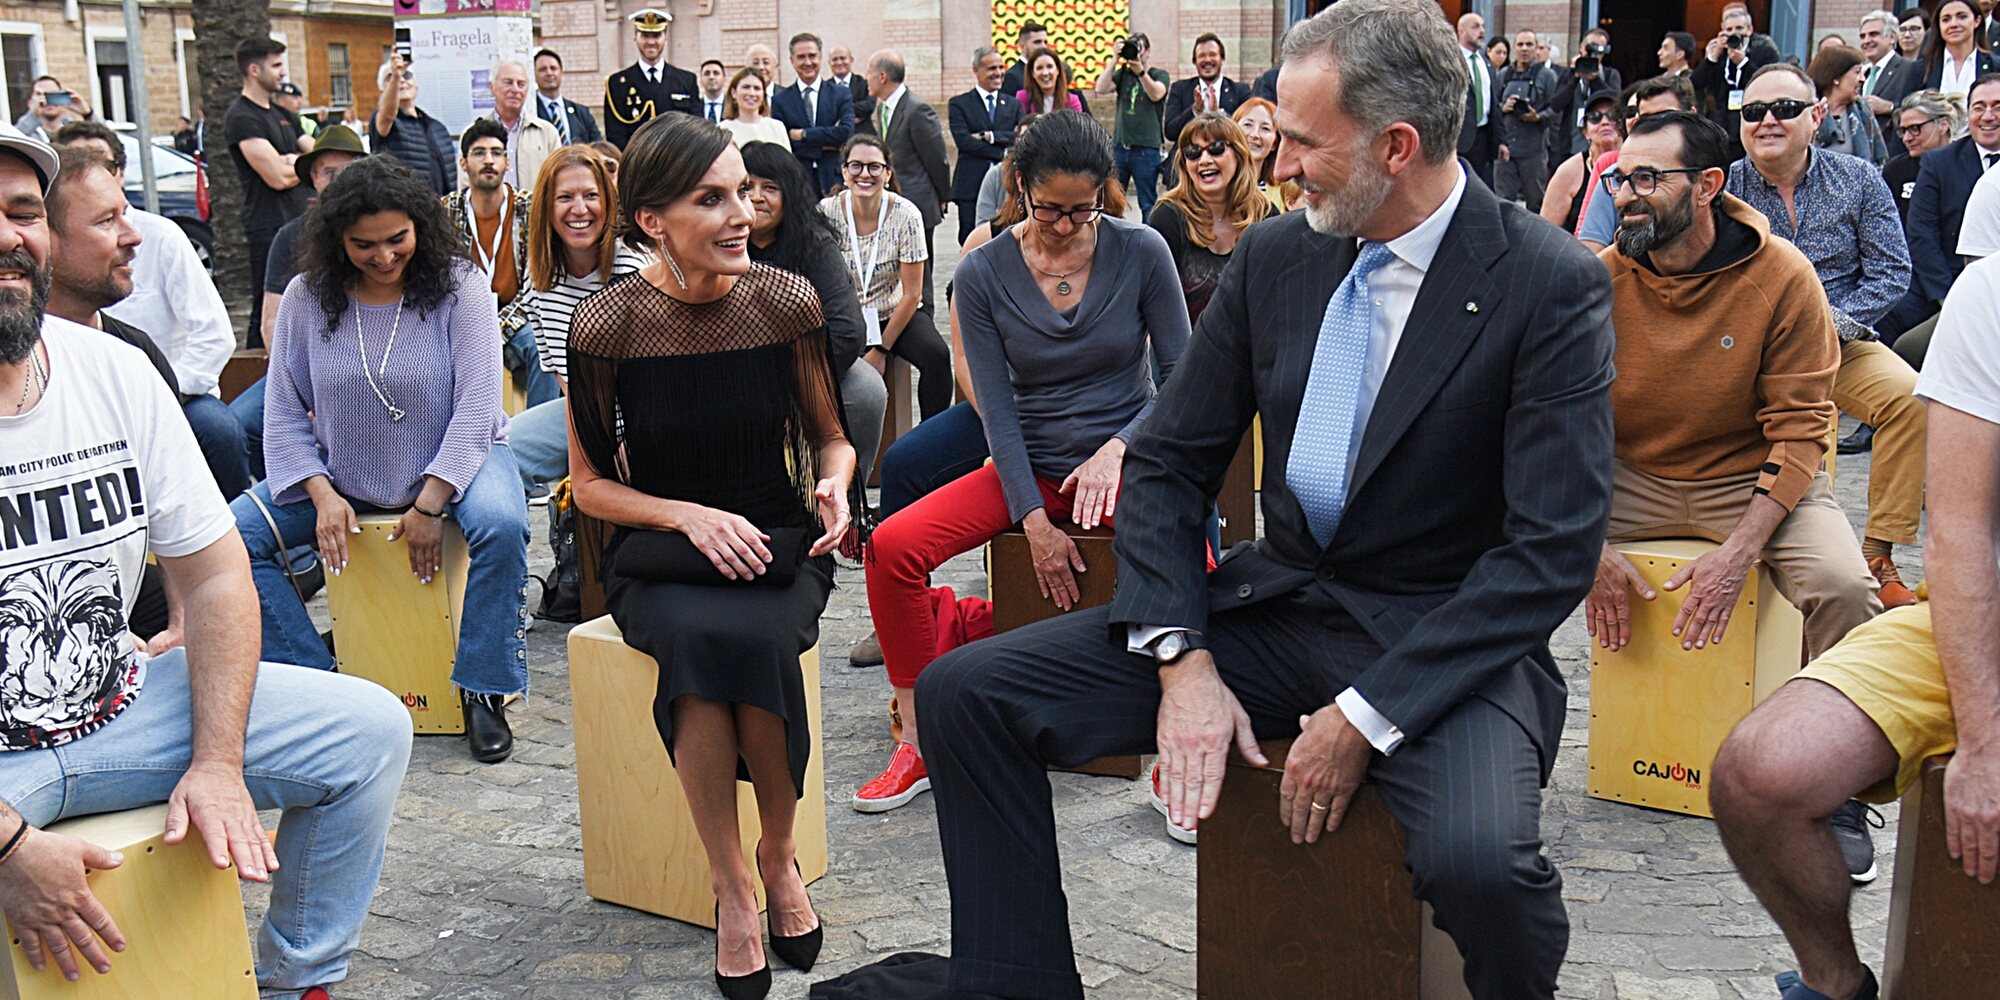 El espontáneo momento que han protagonizado los Reyes Felipe y Letizia al tocar un cajón flamenco